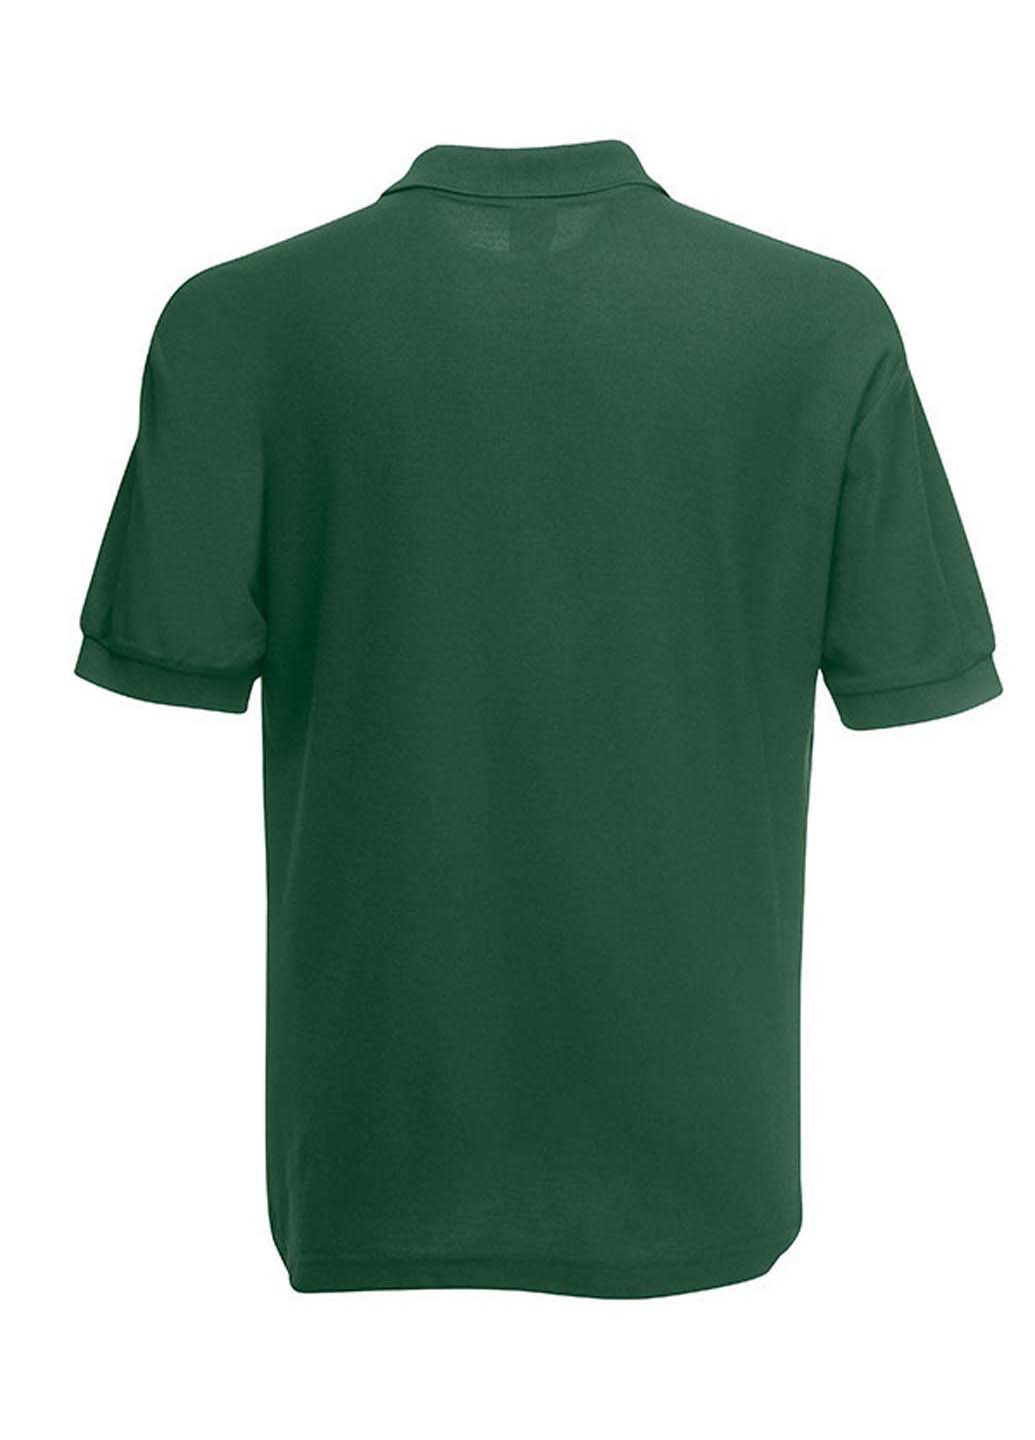 Темно-зеленая футболка-поло для мужчин Fruit of the Loom